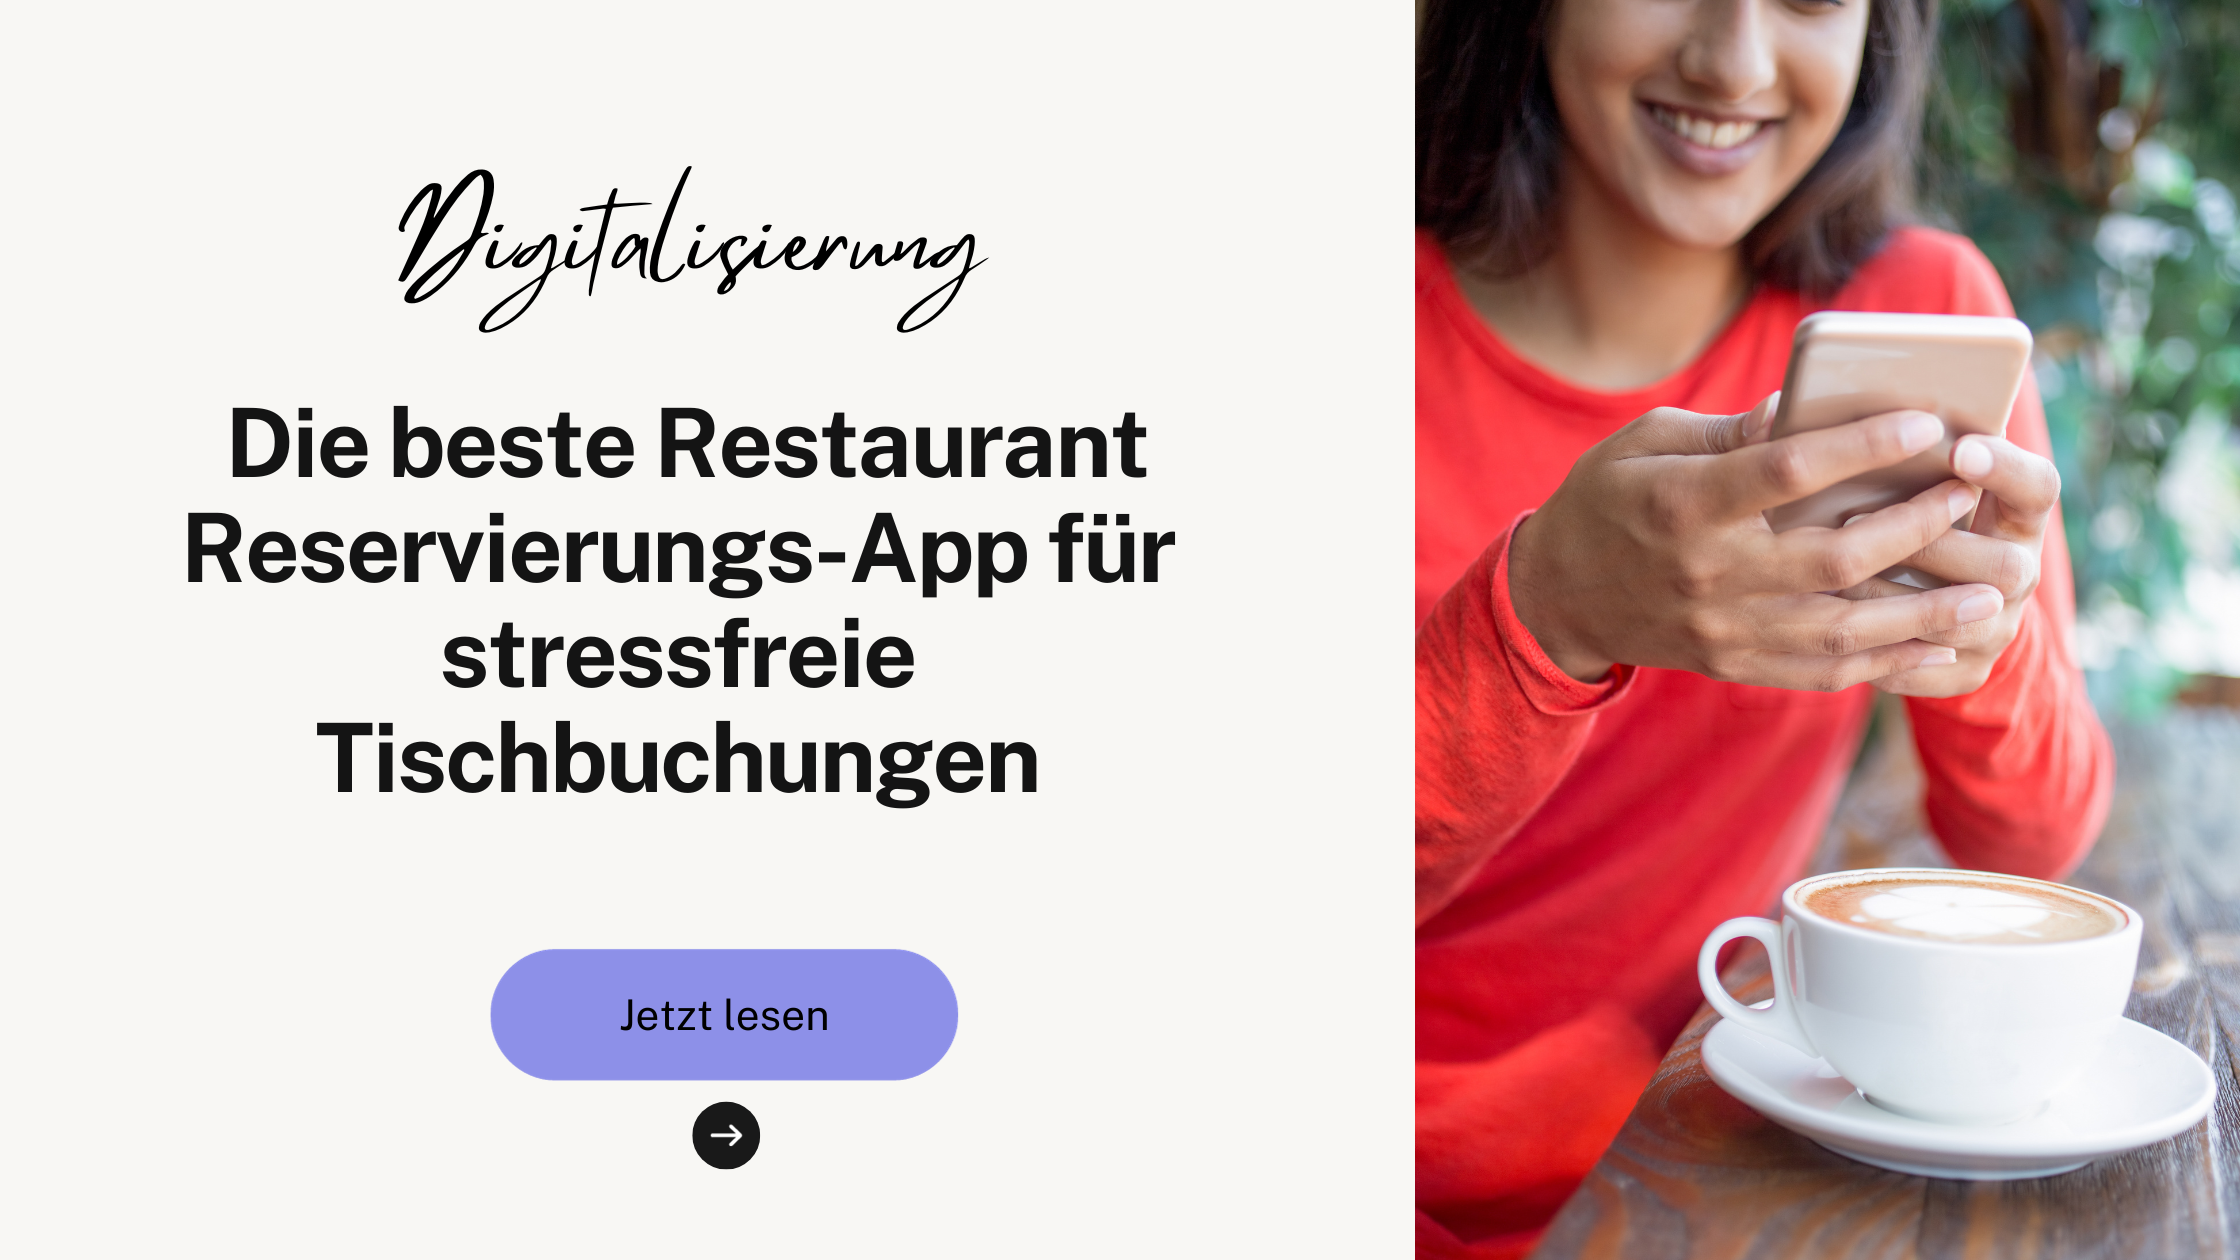 Die beste Restaurant Reservierungs-App für stressfreie Tischbuchungen